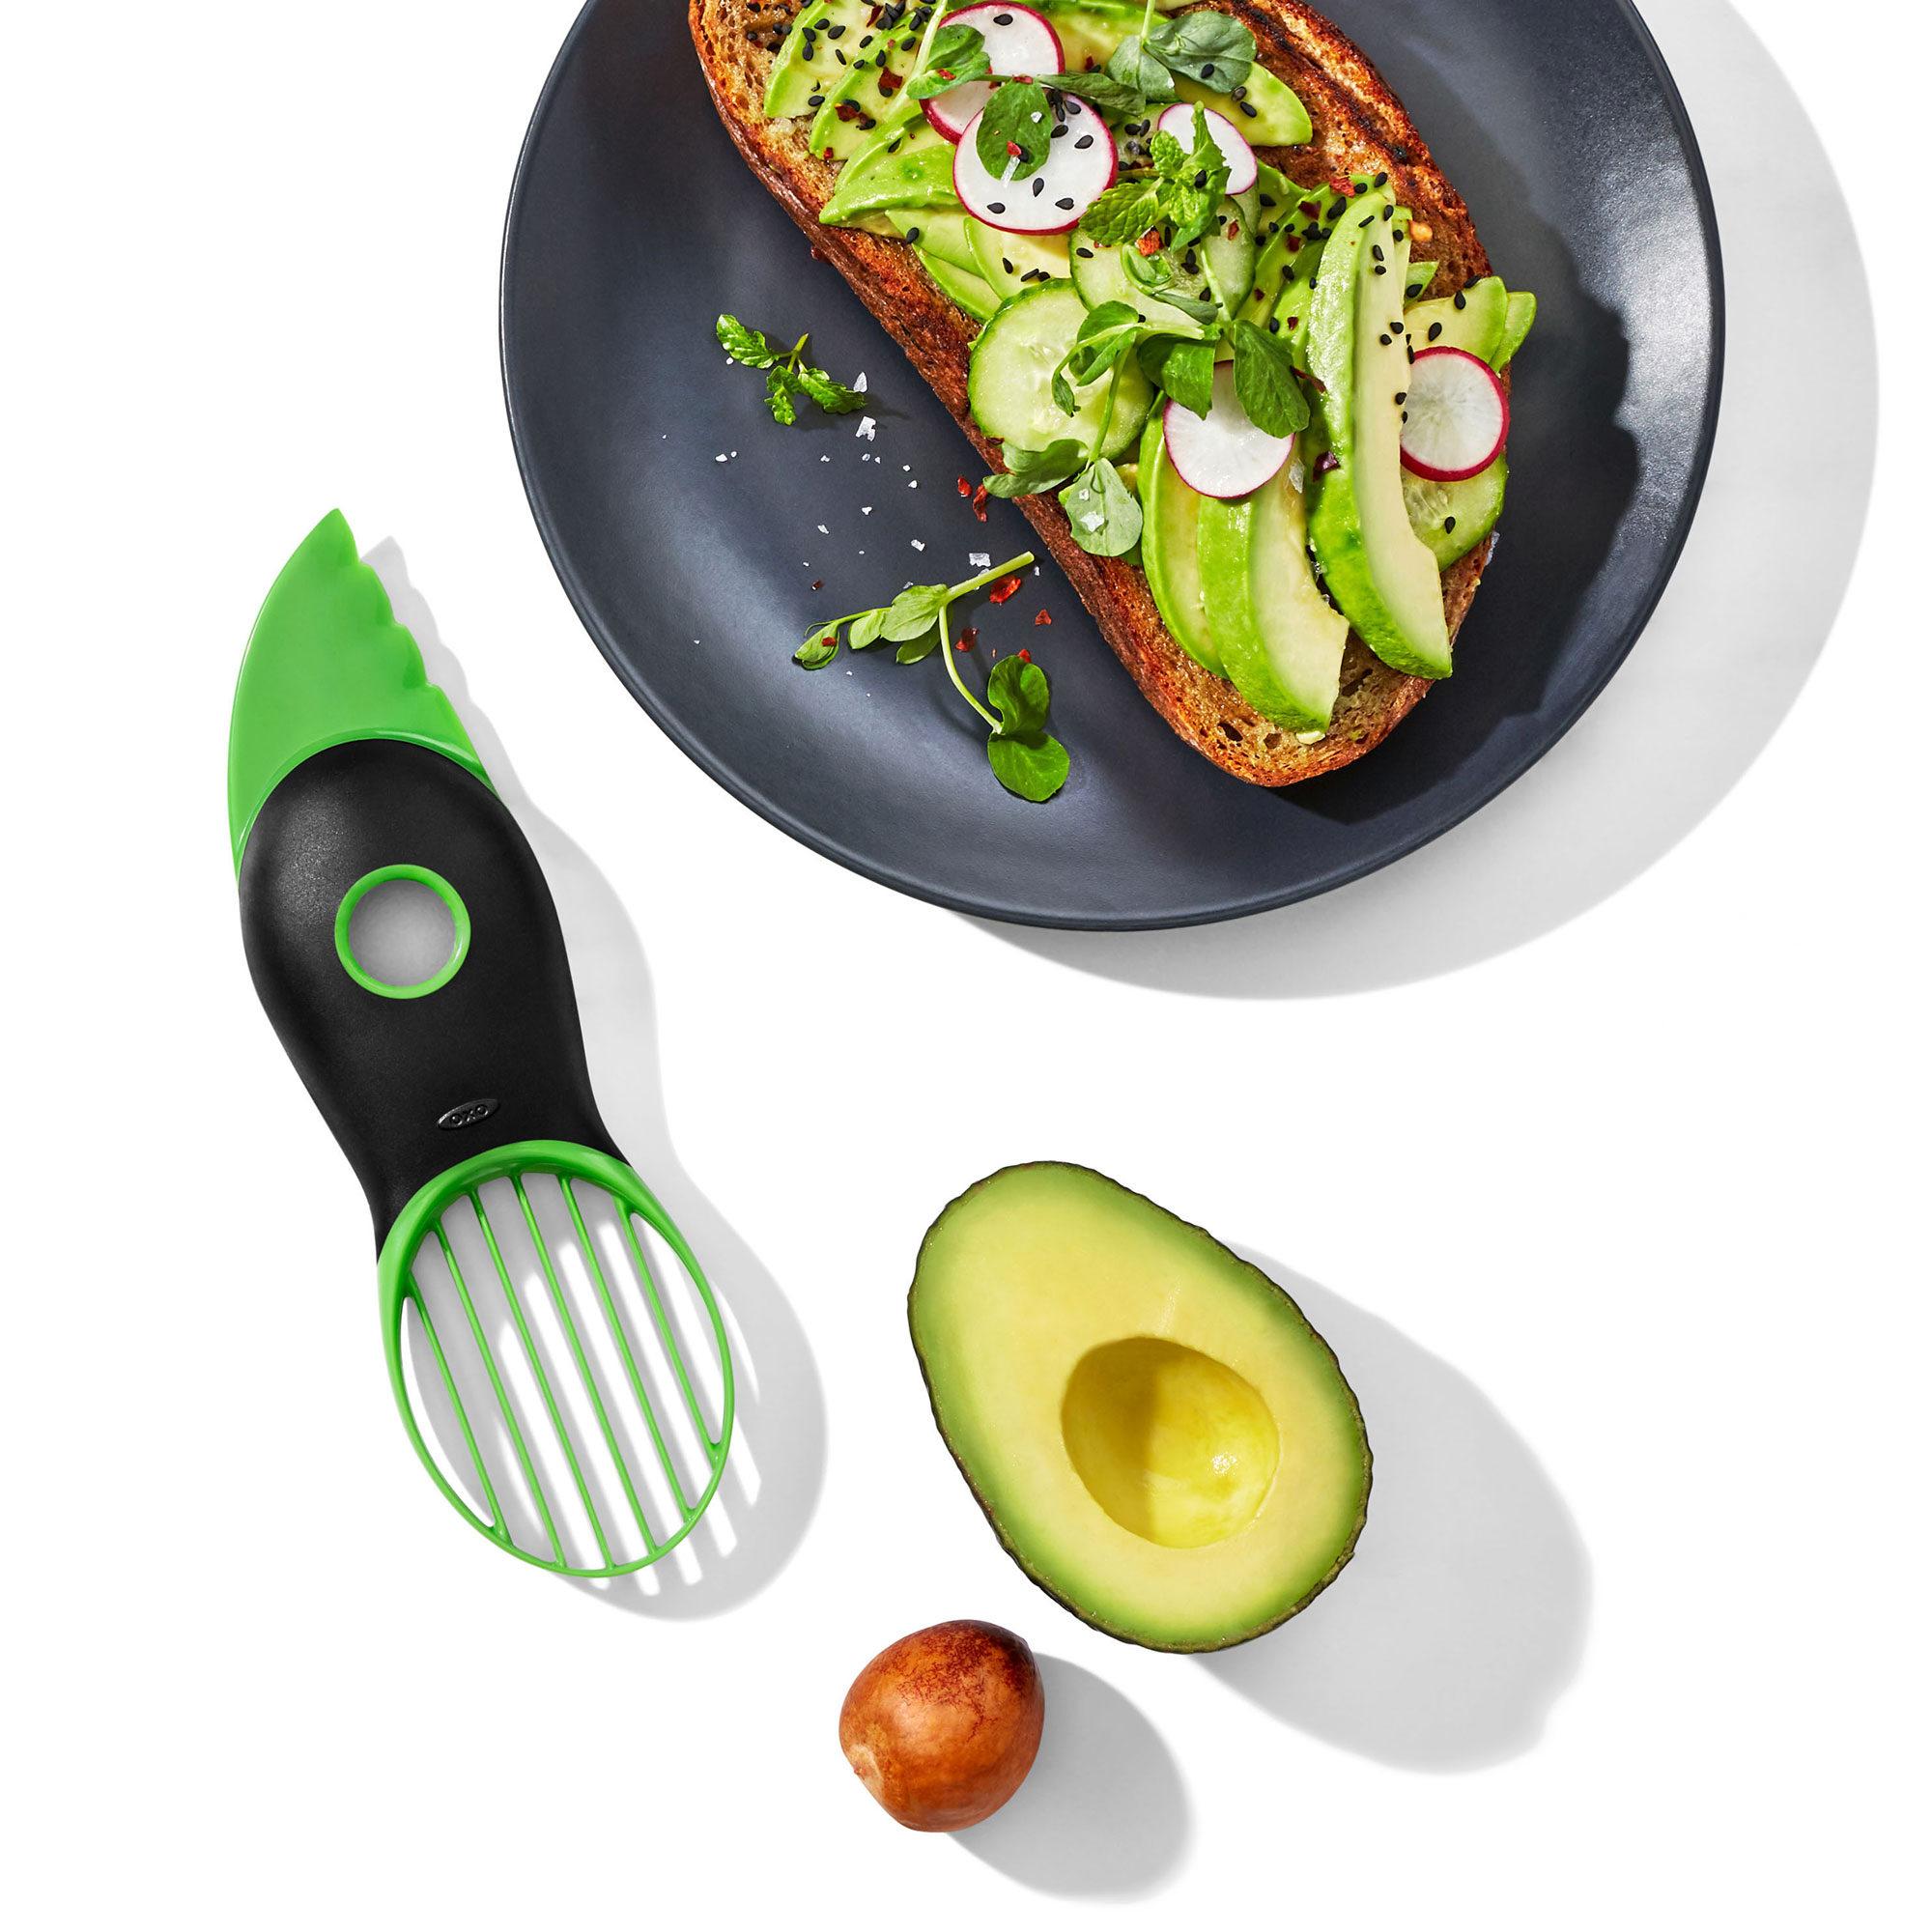 OXO Good Grips 3 in 1 Avocado Slicer Image 3